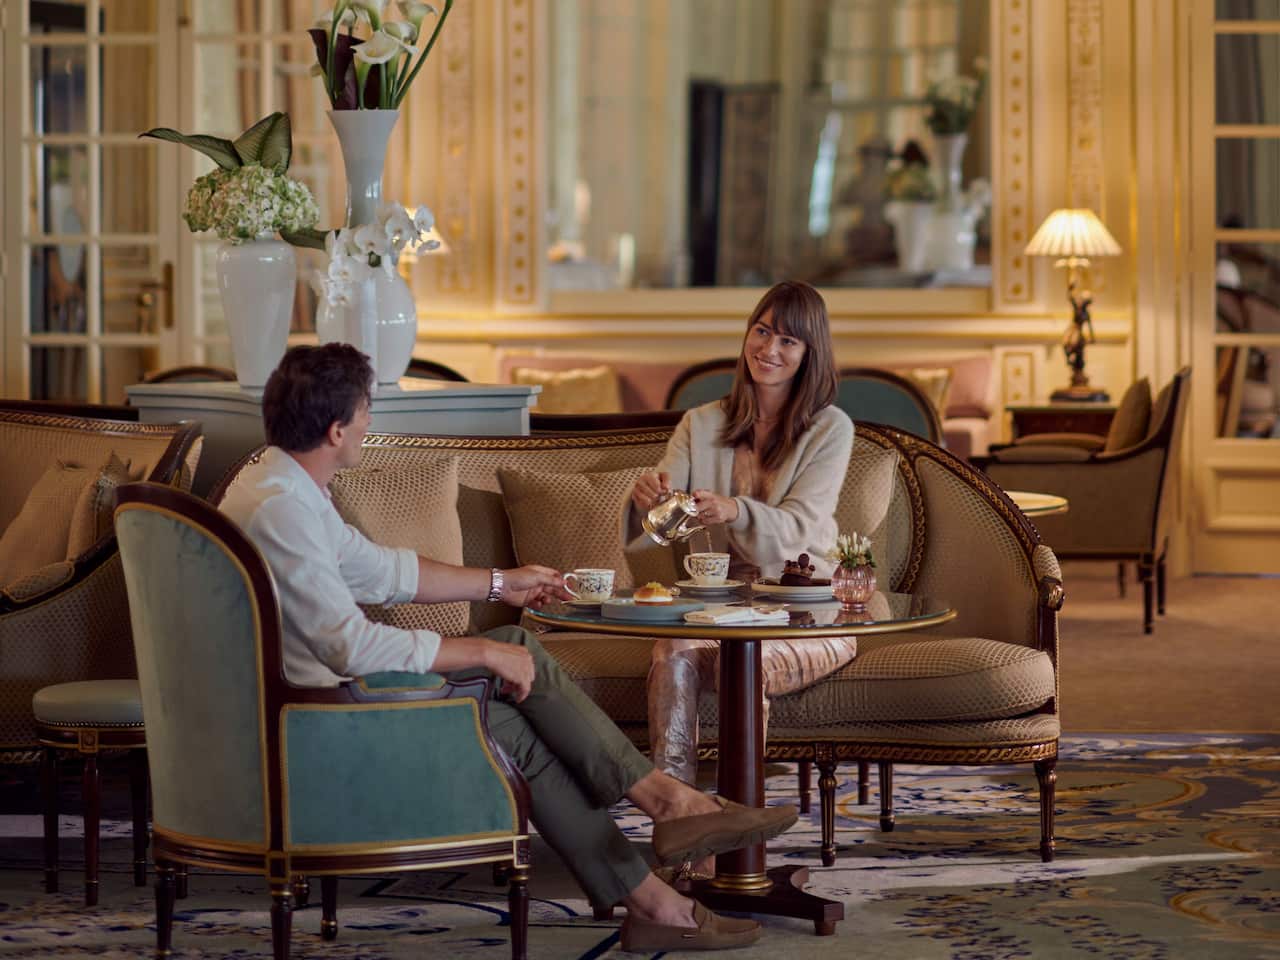 Le Lounge restaurant intérieur à l'hôtel du Palais biarritz 